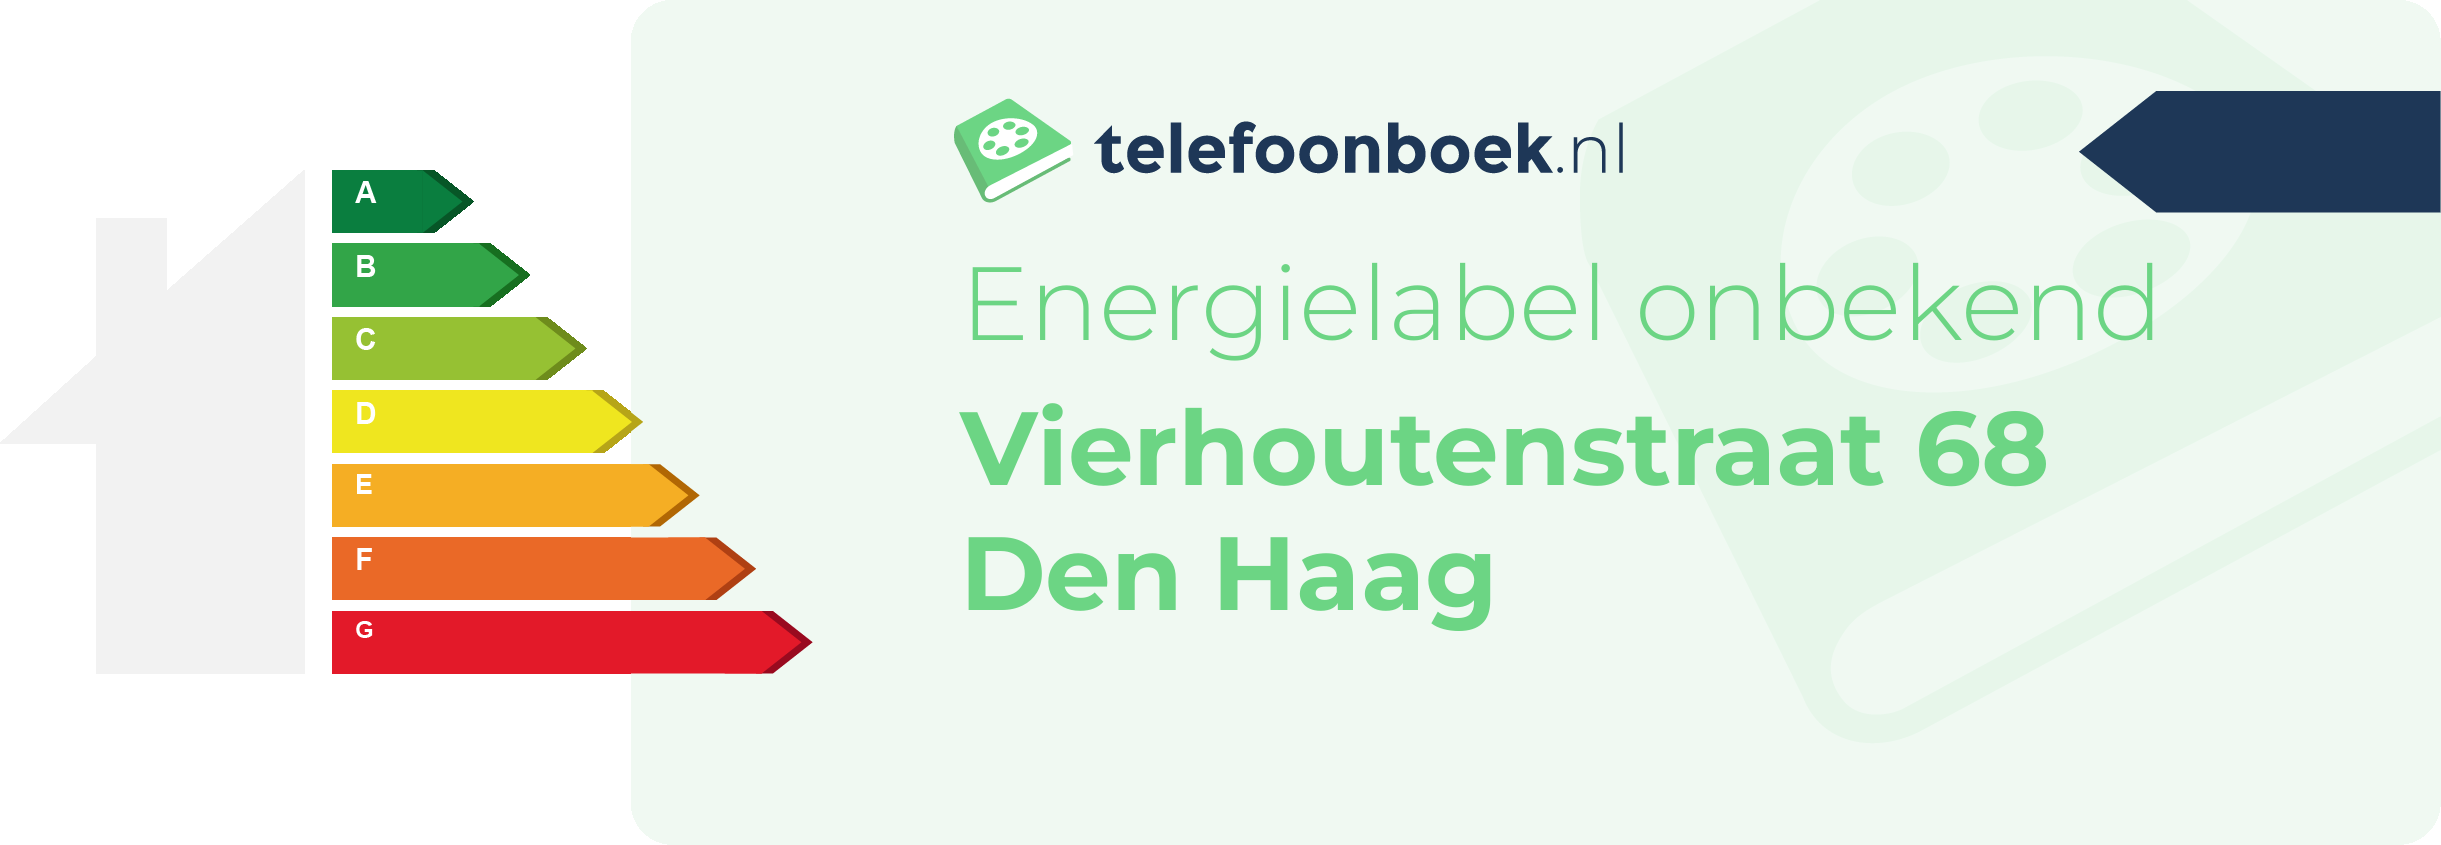 Energielabel Vierhoutenstraat 68 Den Haag